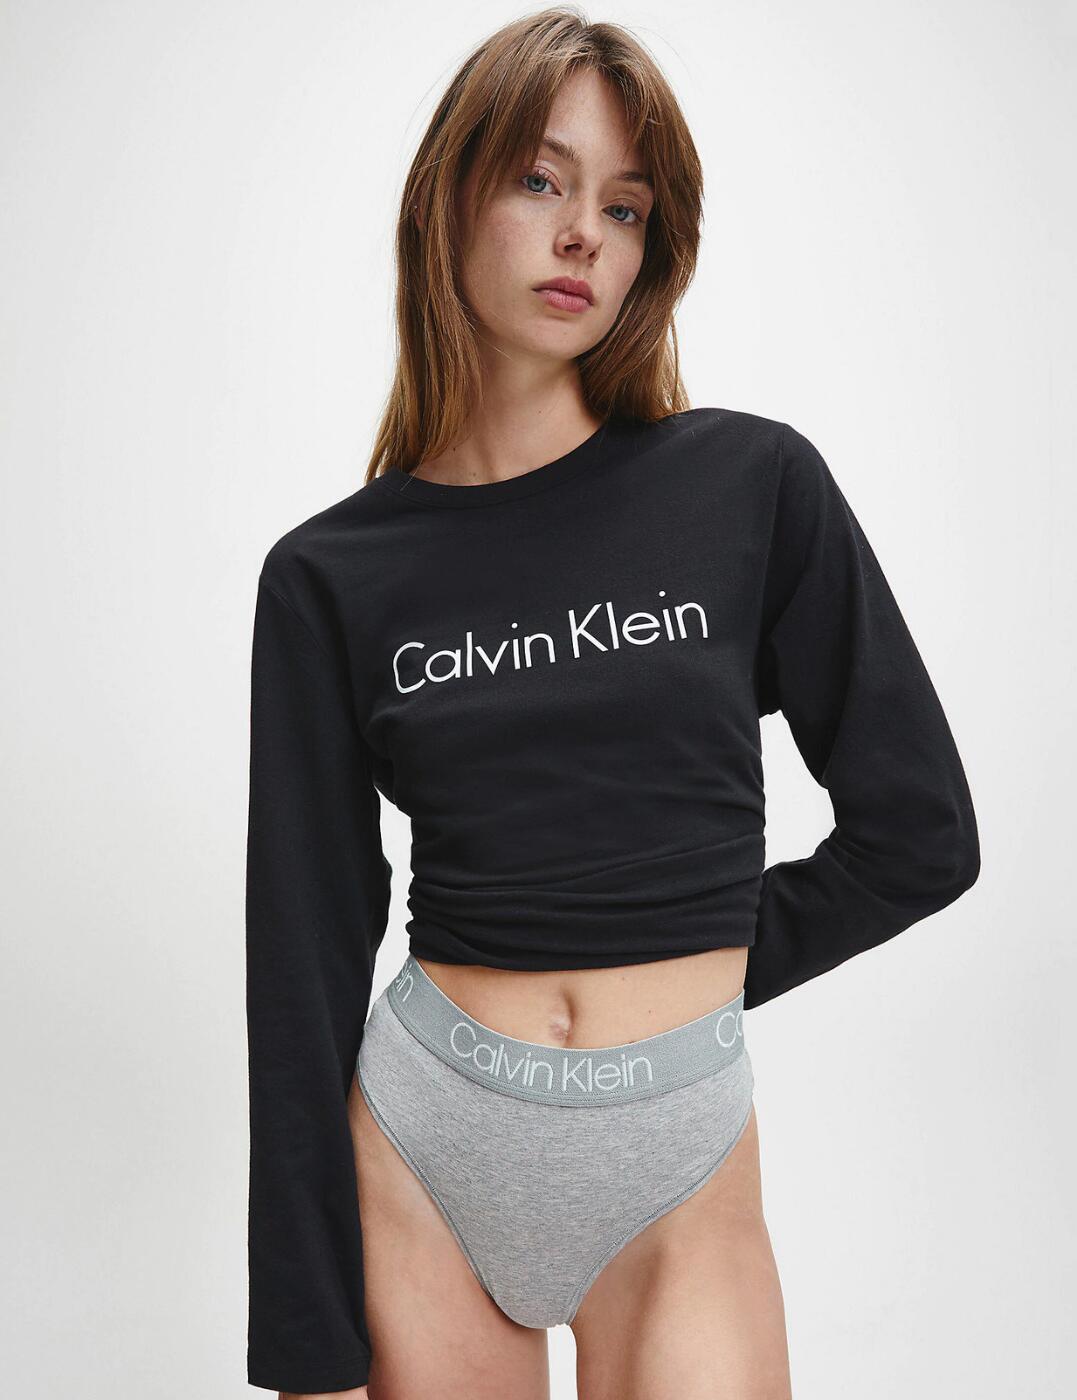 Calvin Klein 3PK HIGH WAIST THONG